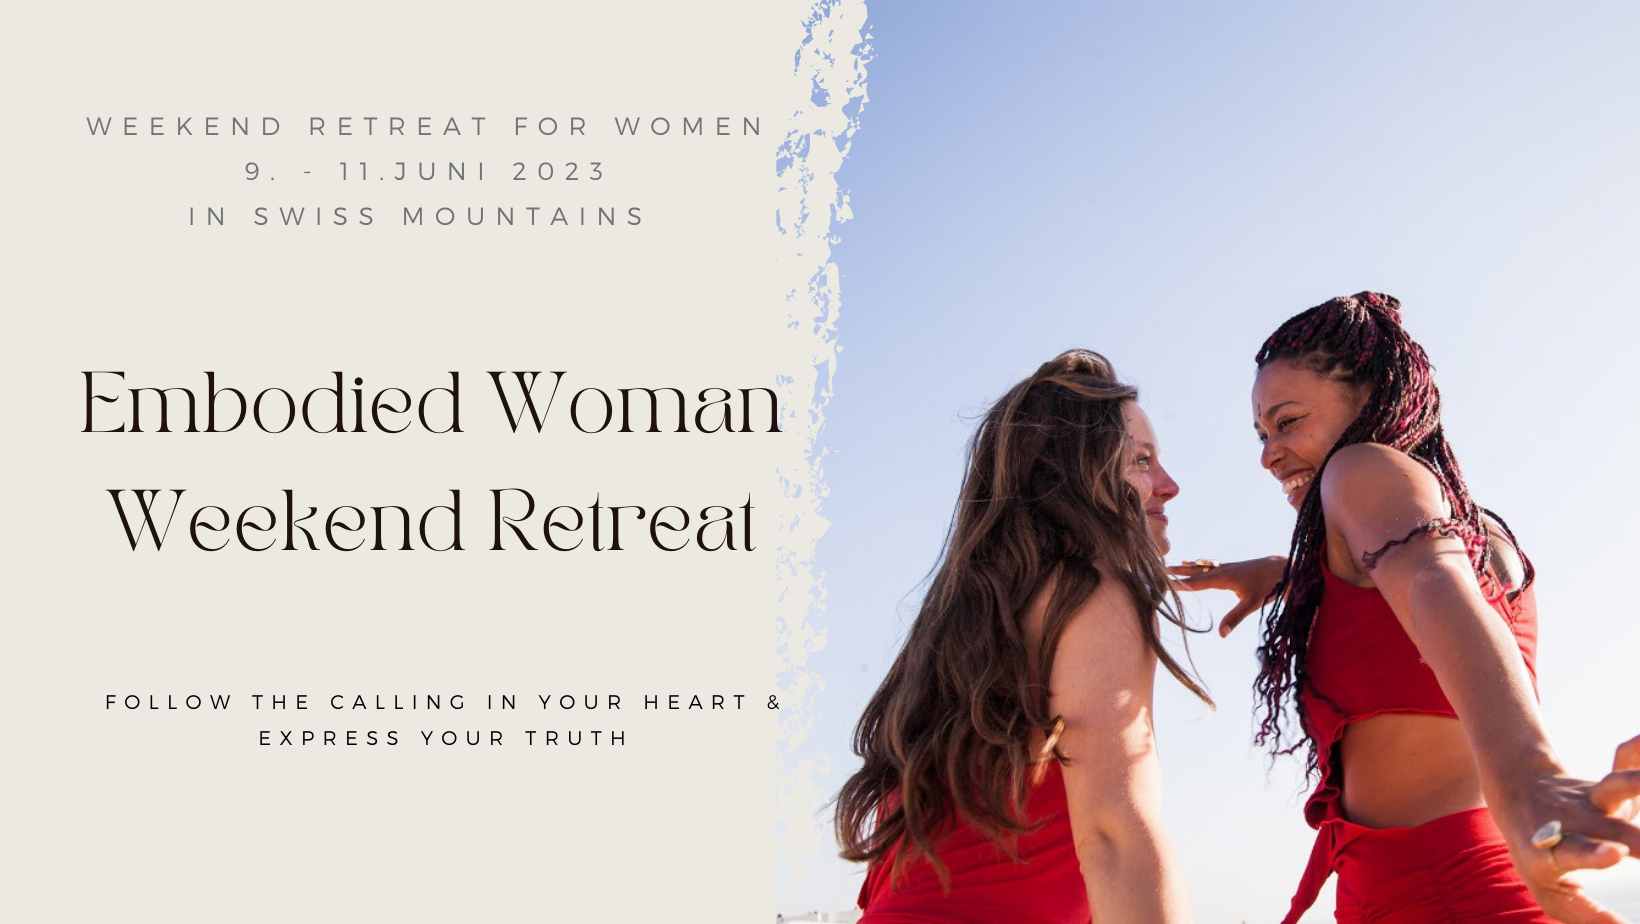 Embodied Woman Weekend Retreat 9.-11.Juni 2023.png